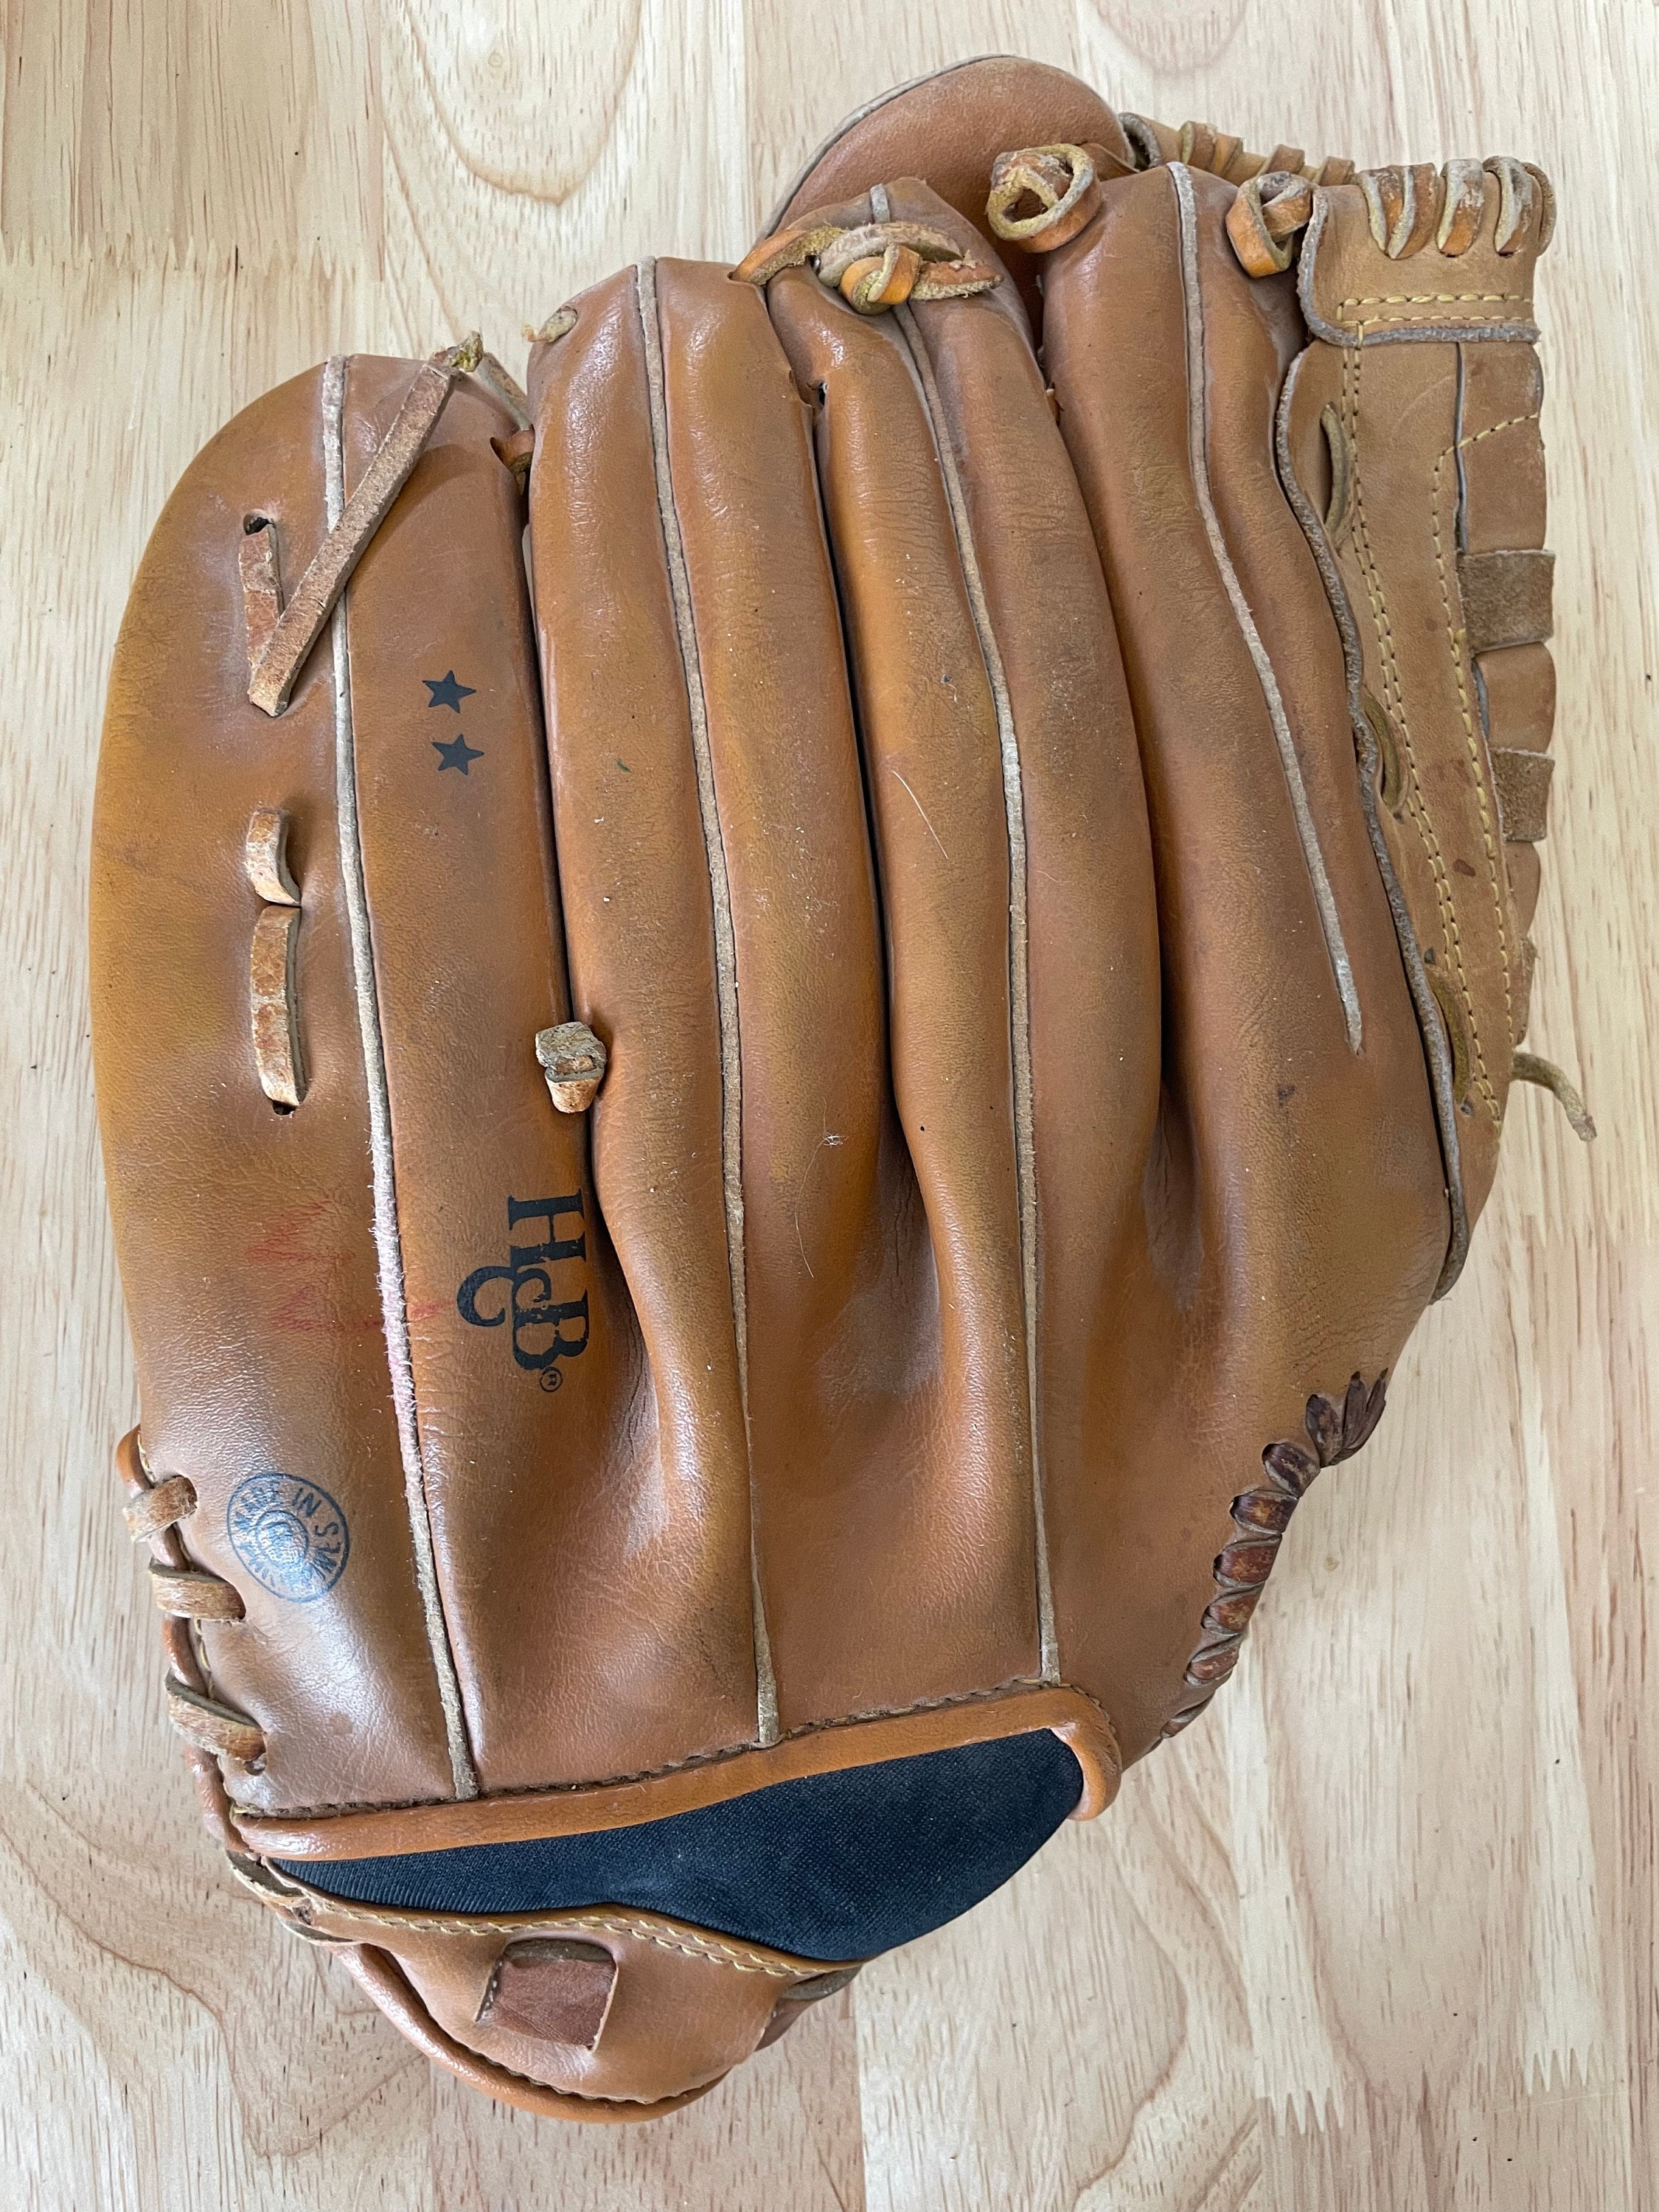 Louisville Slugger Brett Butler Baseball Glove Cowhide Leather 